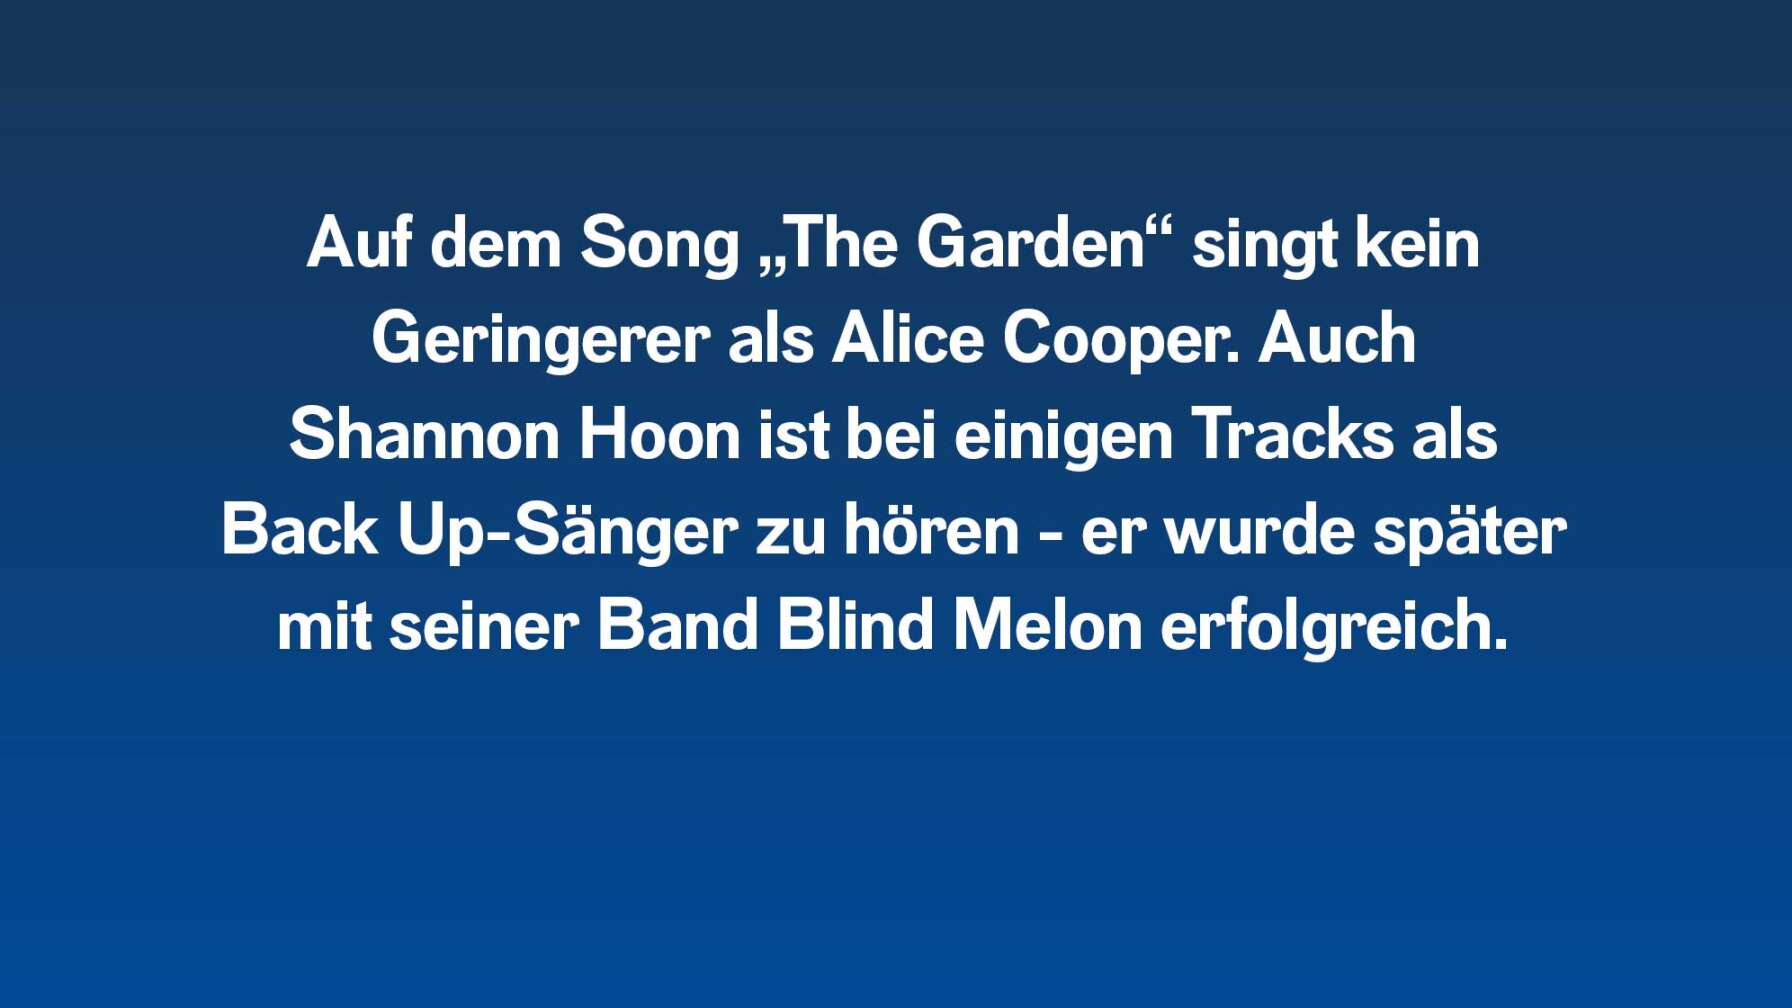 Auf dem Song "The Garden" ist Alice Cooper als Gast-Sänger zu hören.